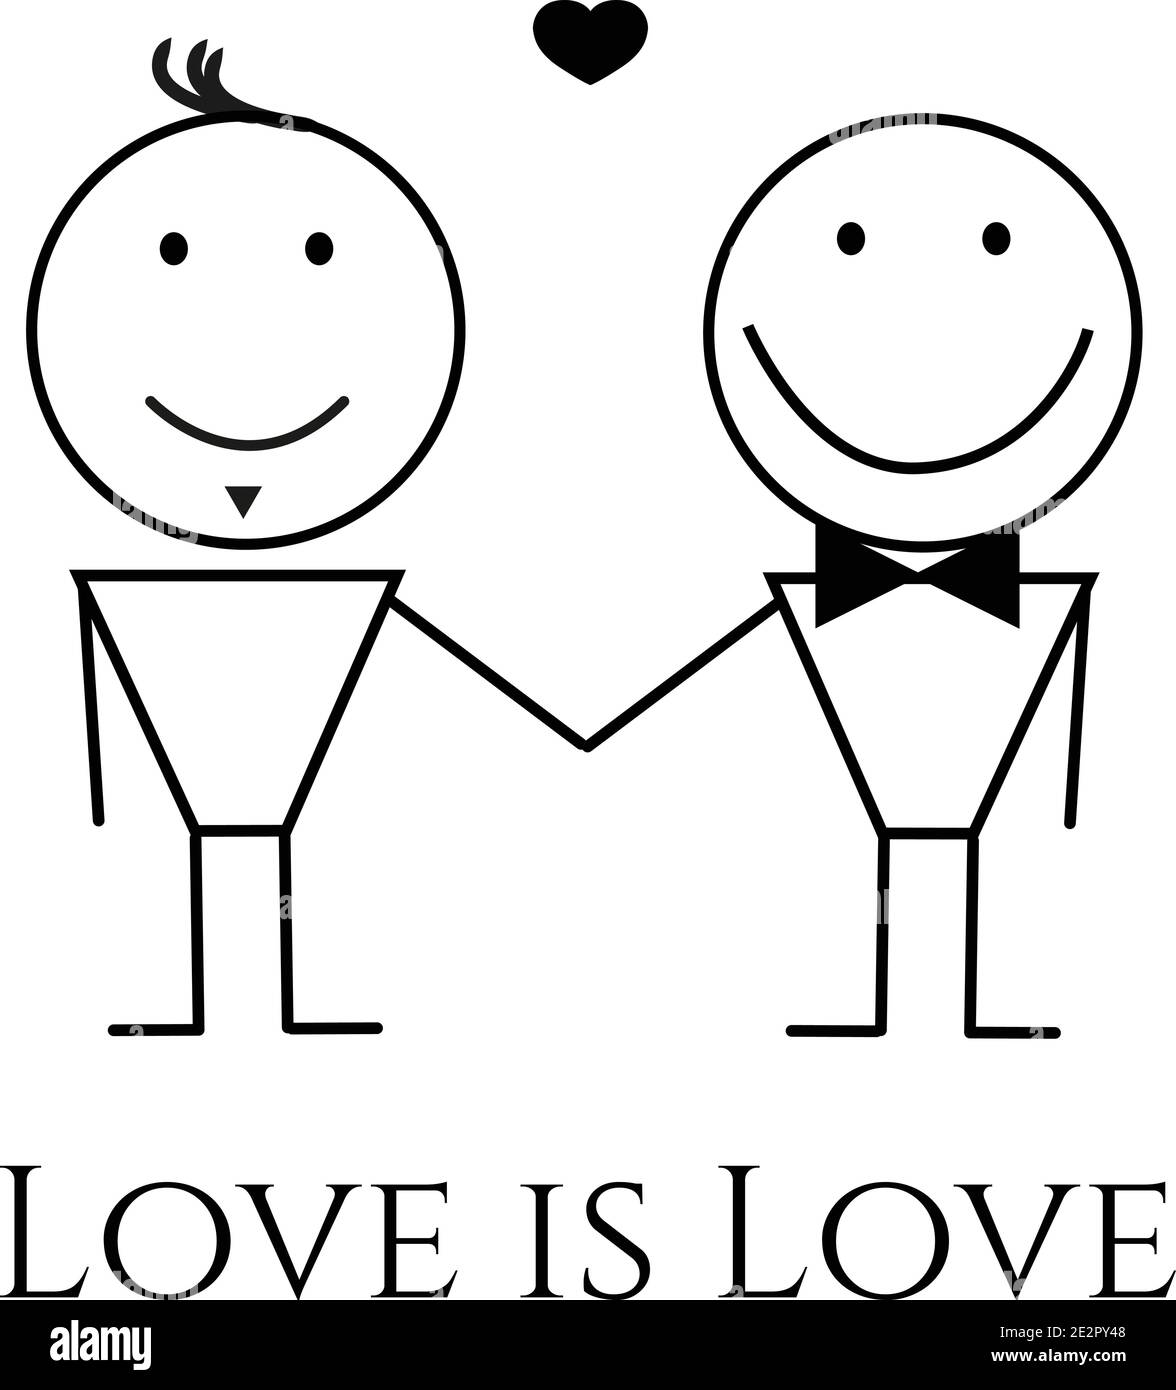 Dessin vectoriel de couple d'hommes gay amoureux tenant les mains. L'amour est l'amour. Concept d'acceptation LGBTQ Illustration de Vecteur